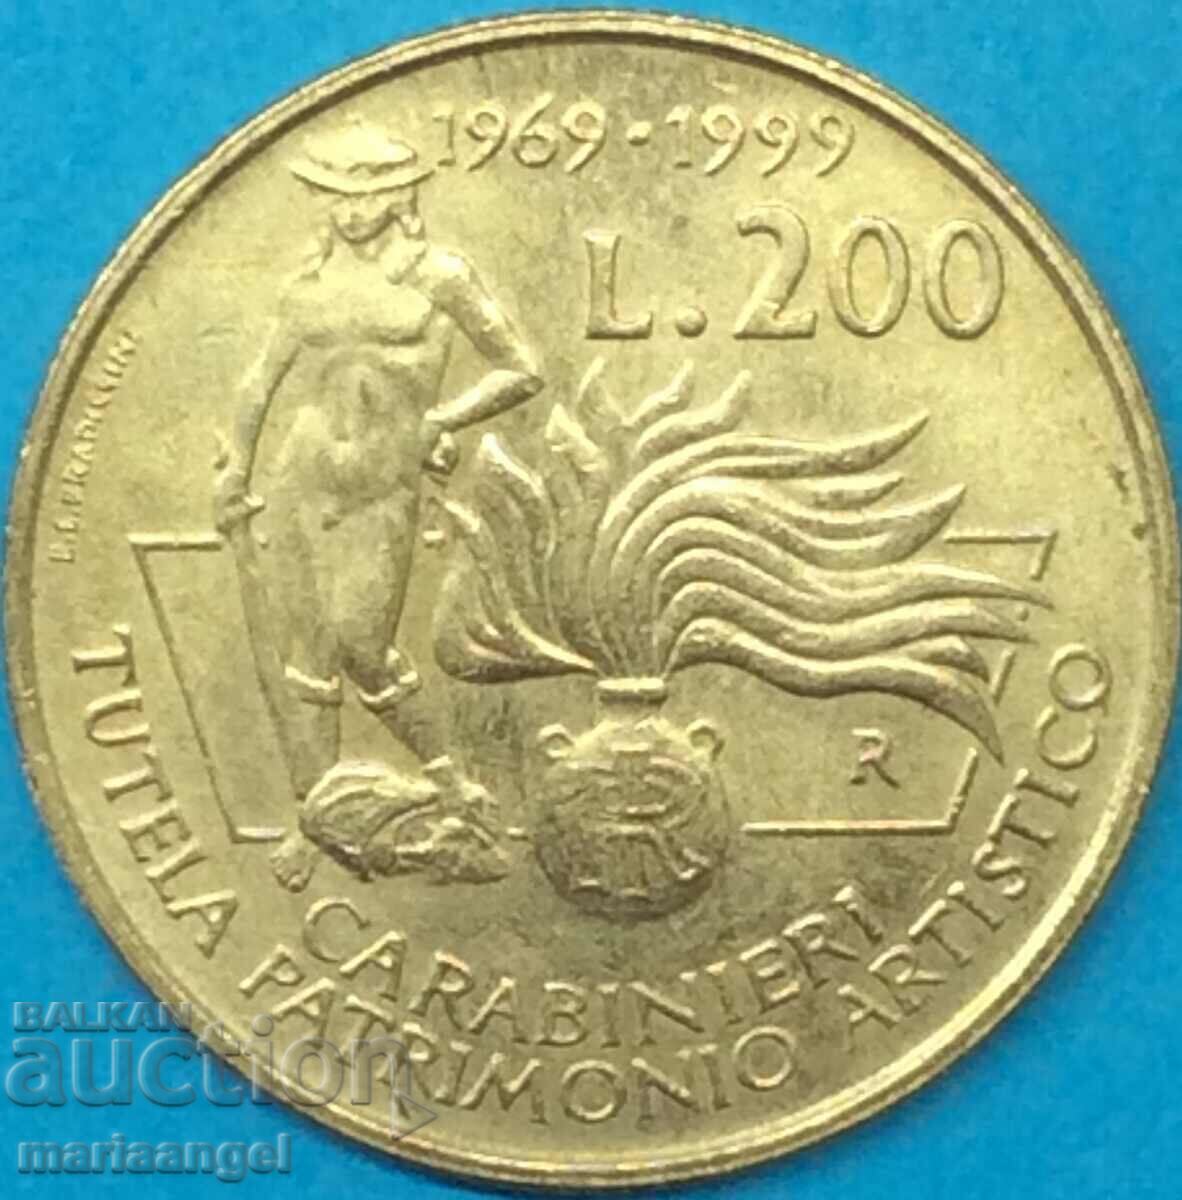 200 λιρέτες 1999 Ιταλία